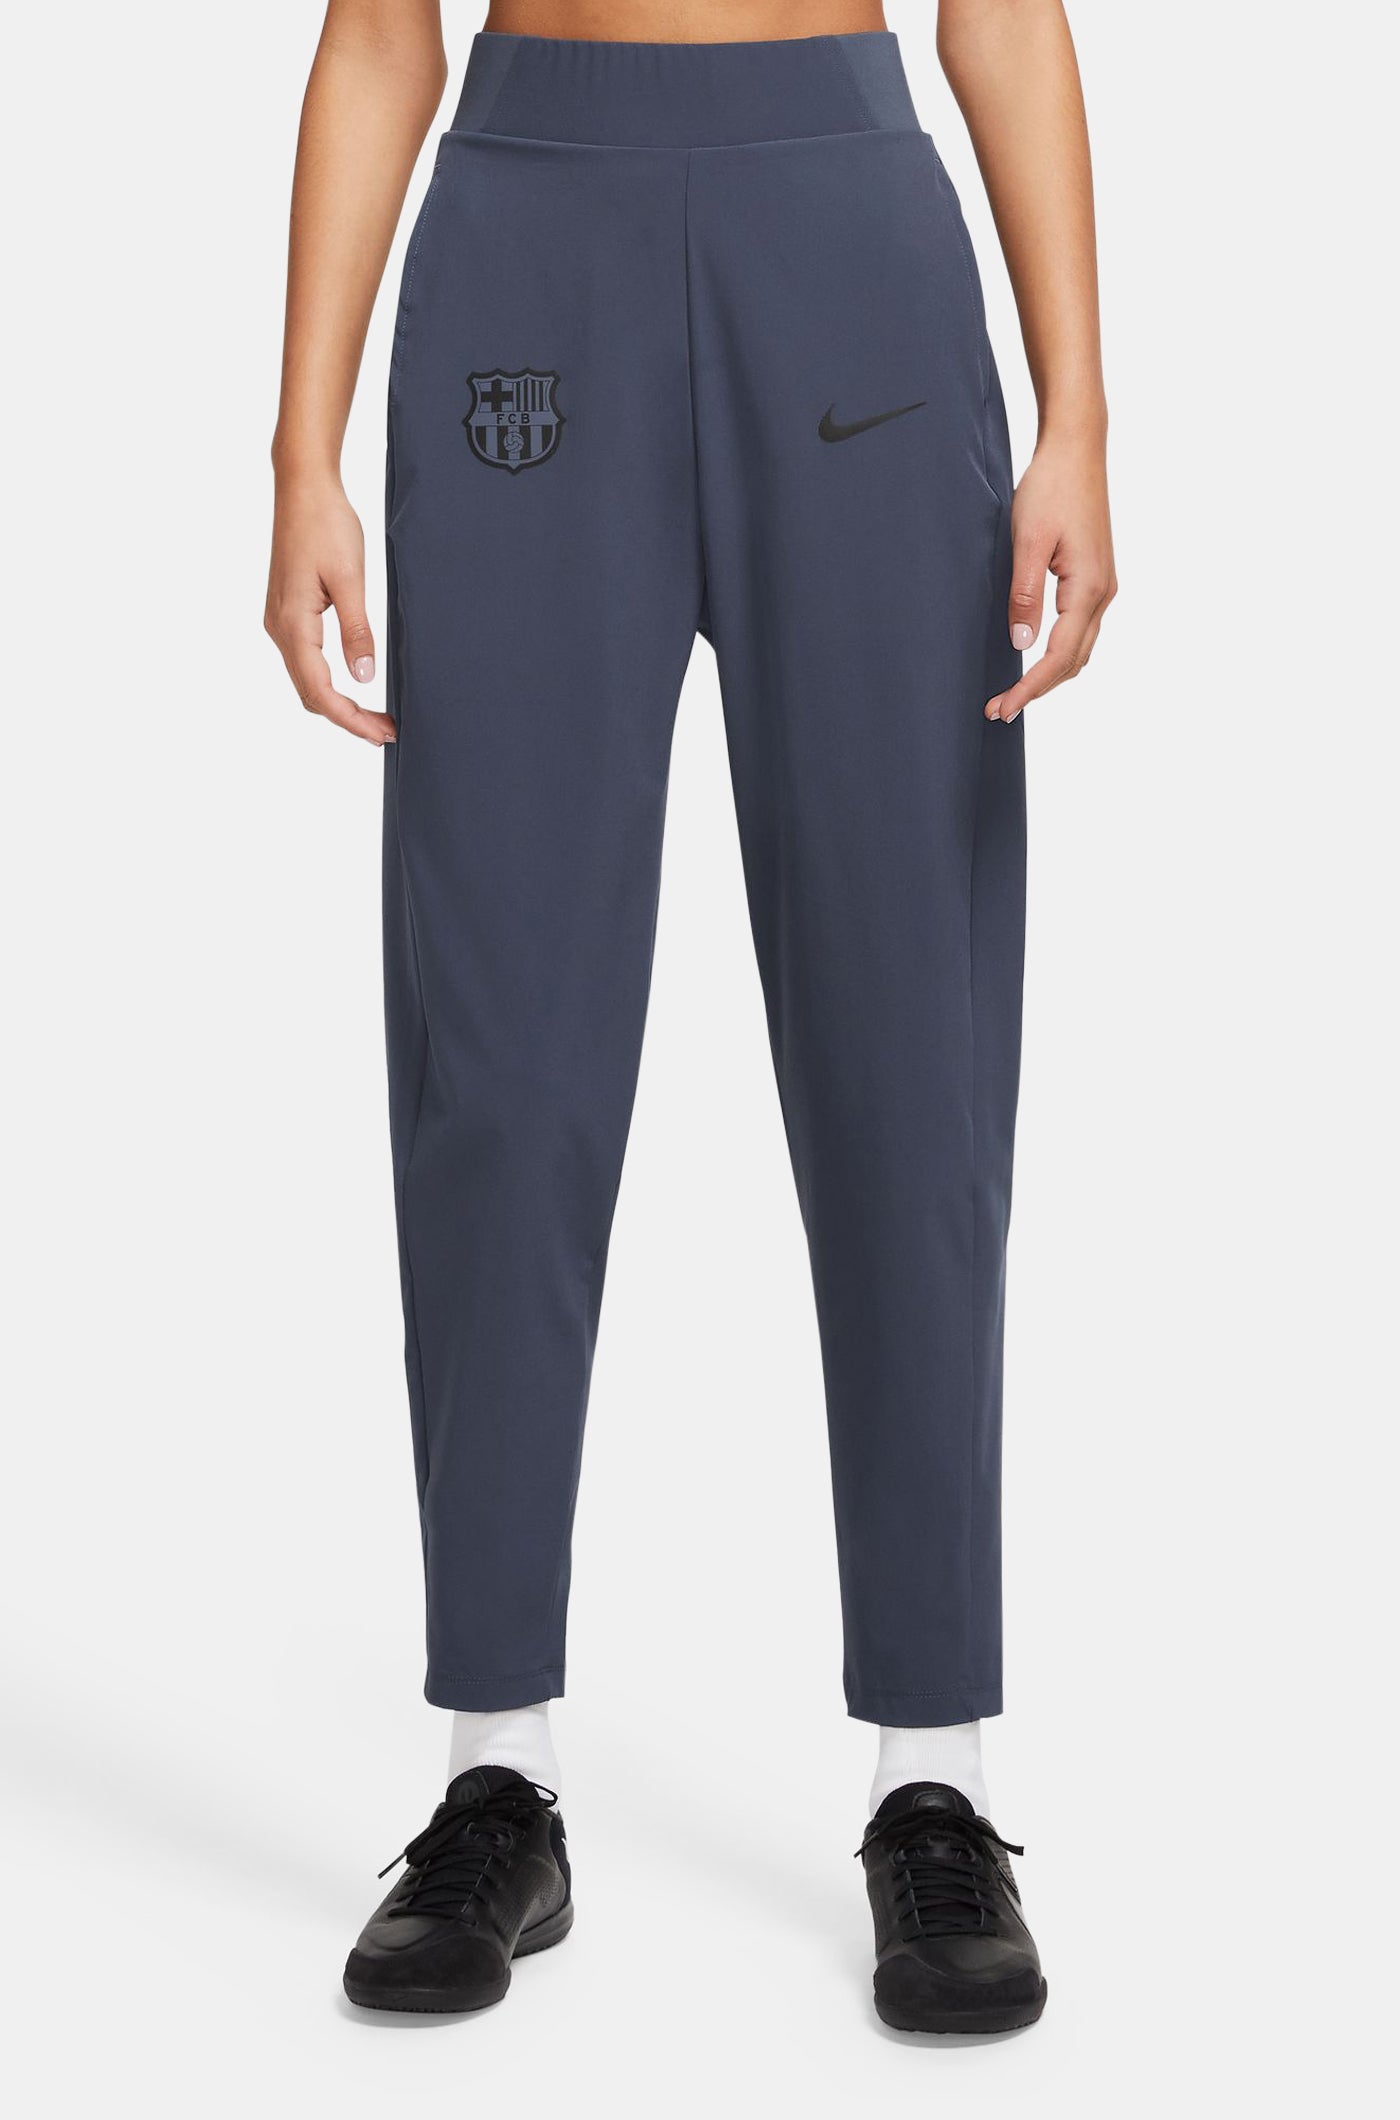 Pantalon bleu Nike Barça - Femme